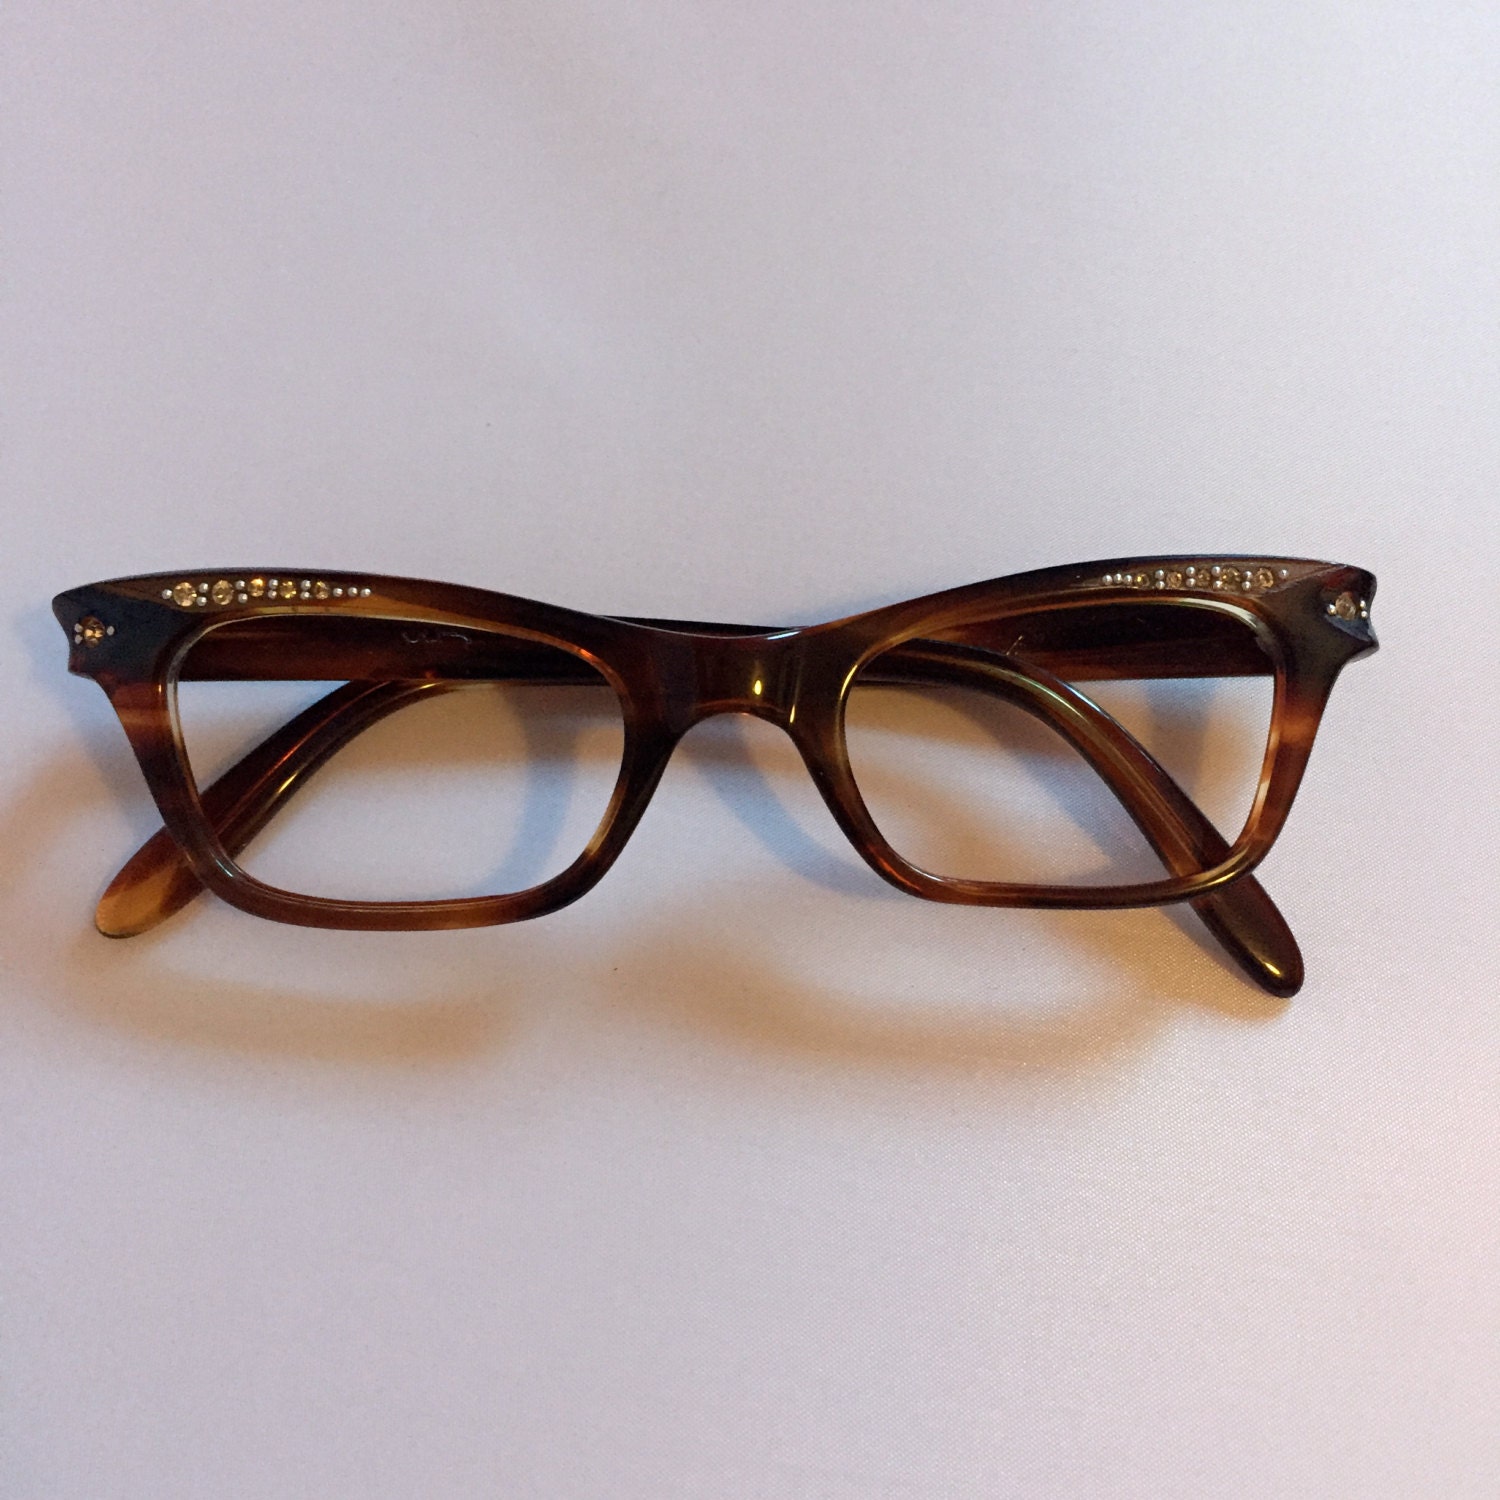 Rhinestone Vintage Glasses Ladies Vintage Eye Glasses in